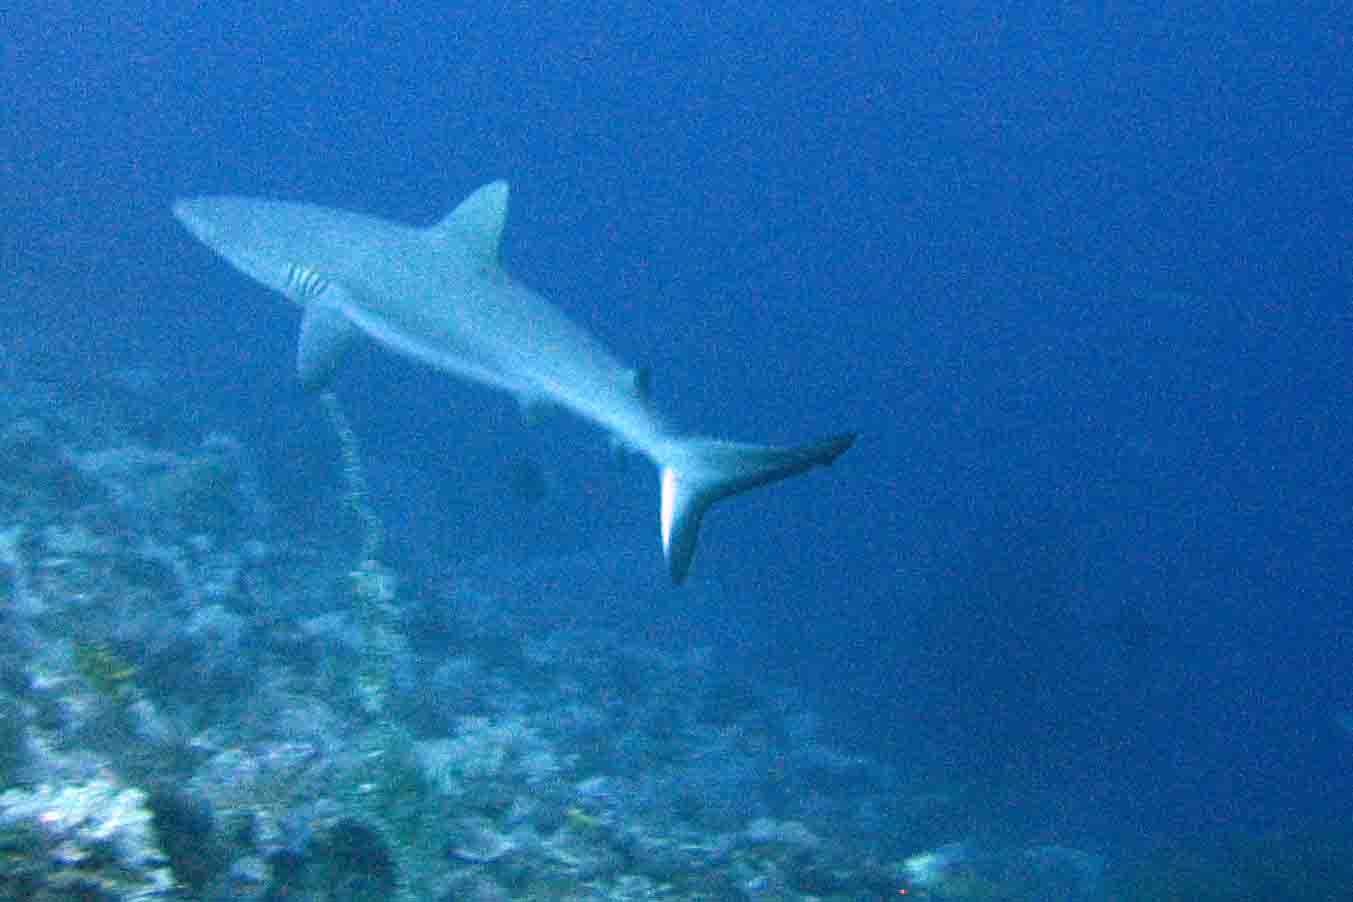 Grey reef shark